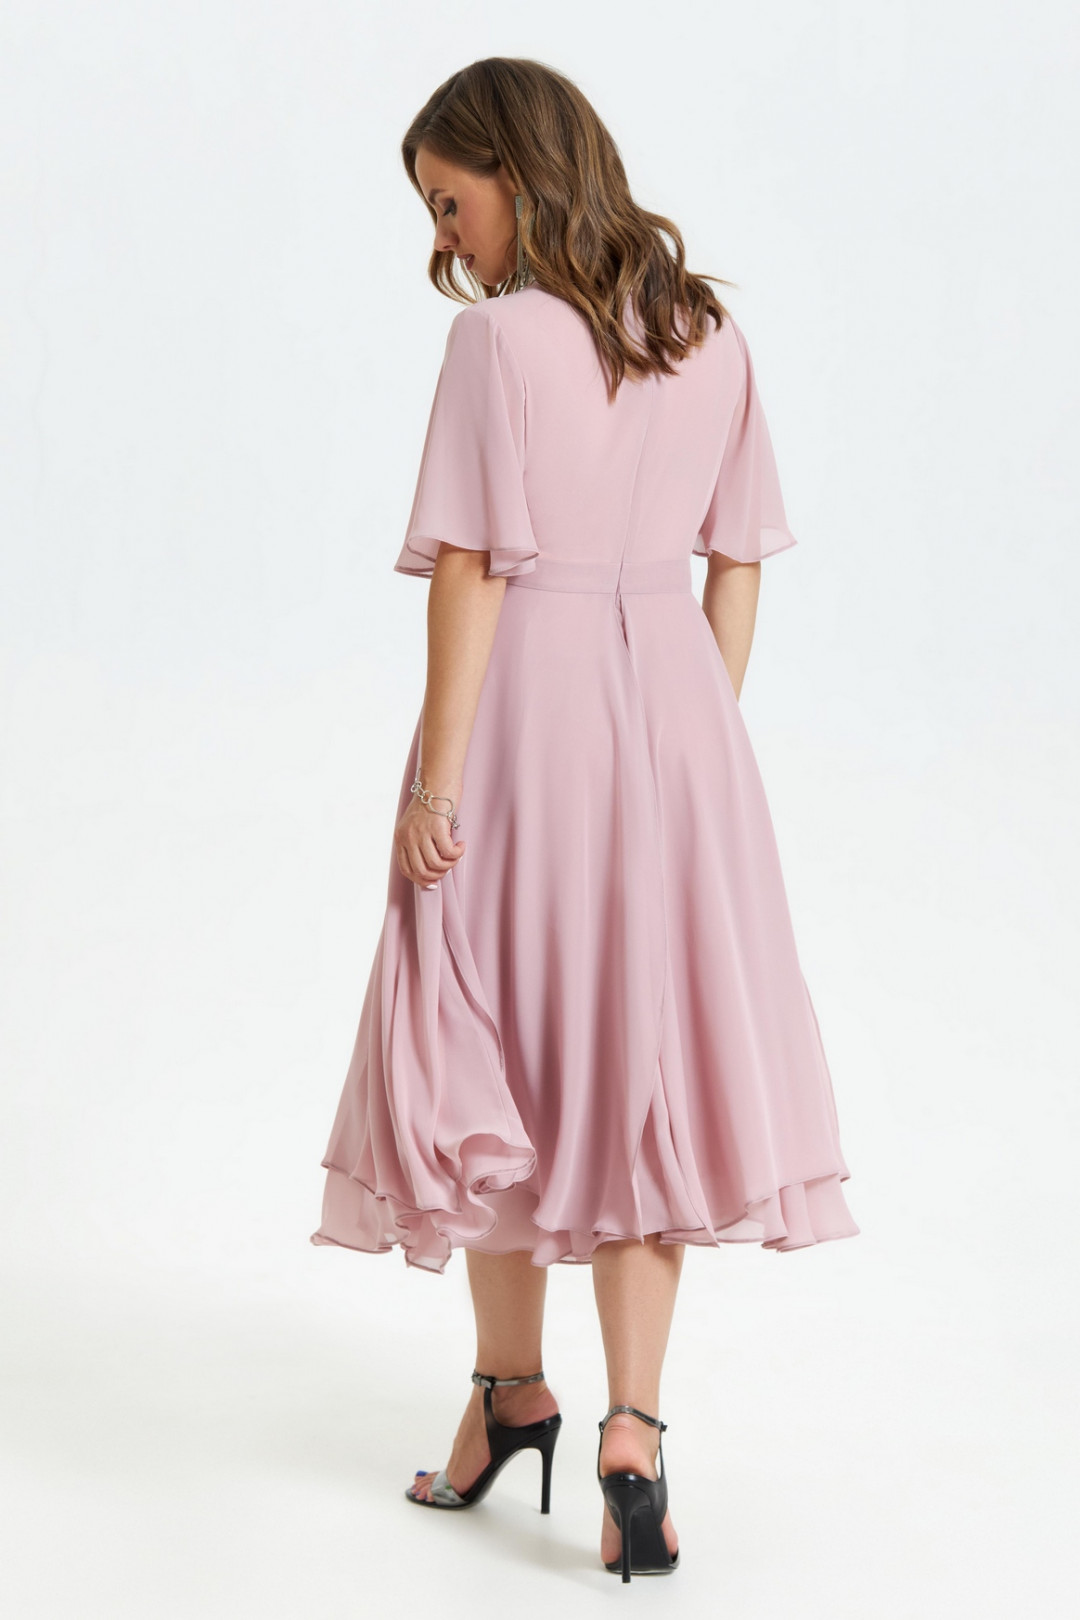 Платье TEZA 1455 пыльно-розовый